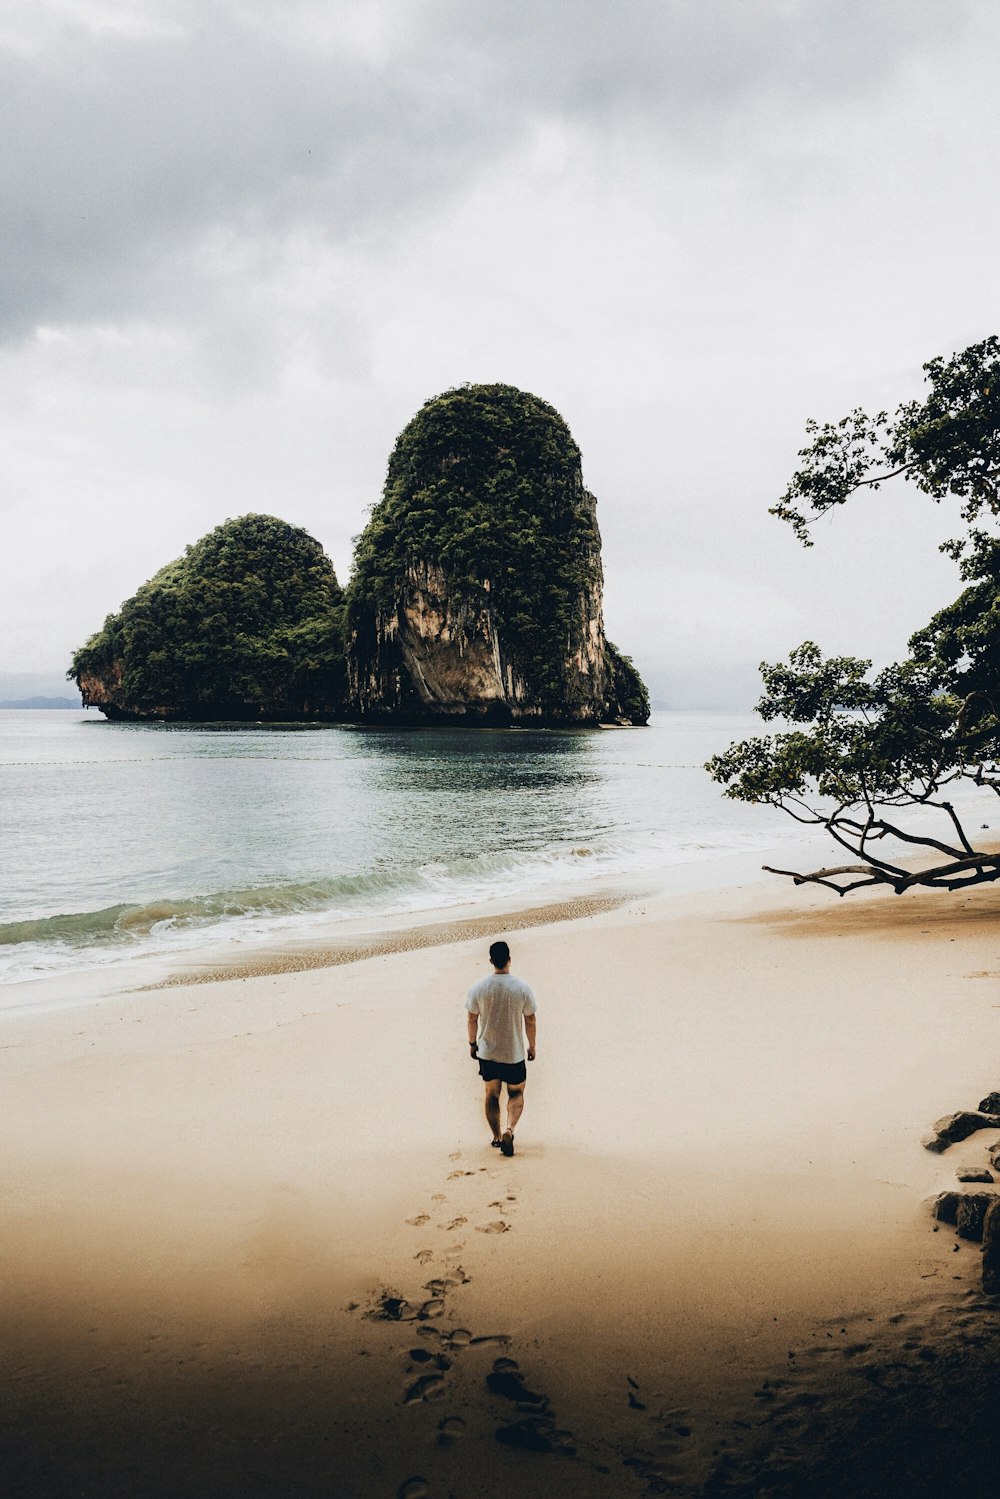 Mann im weißen T-Shirt geht am Ufer mit Blick auf zwei Inselchen